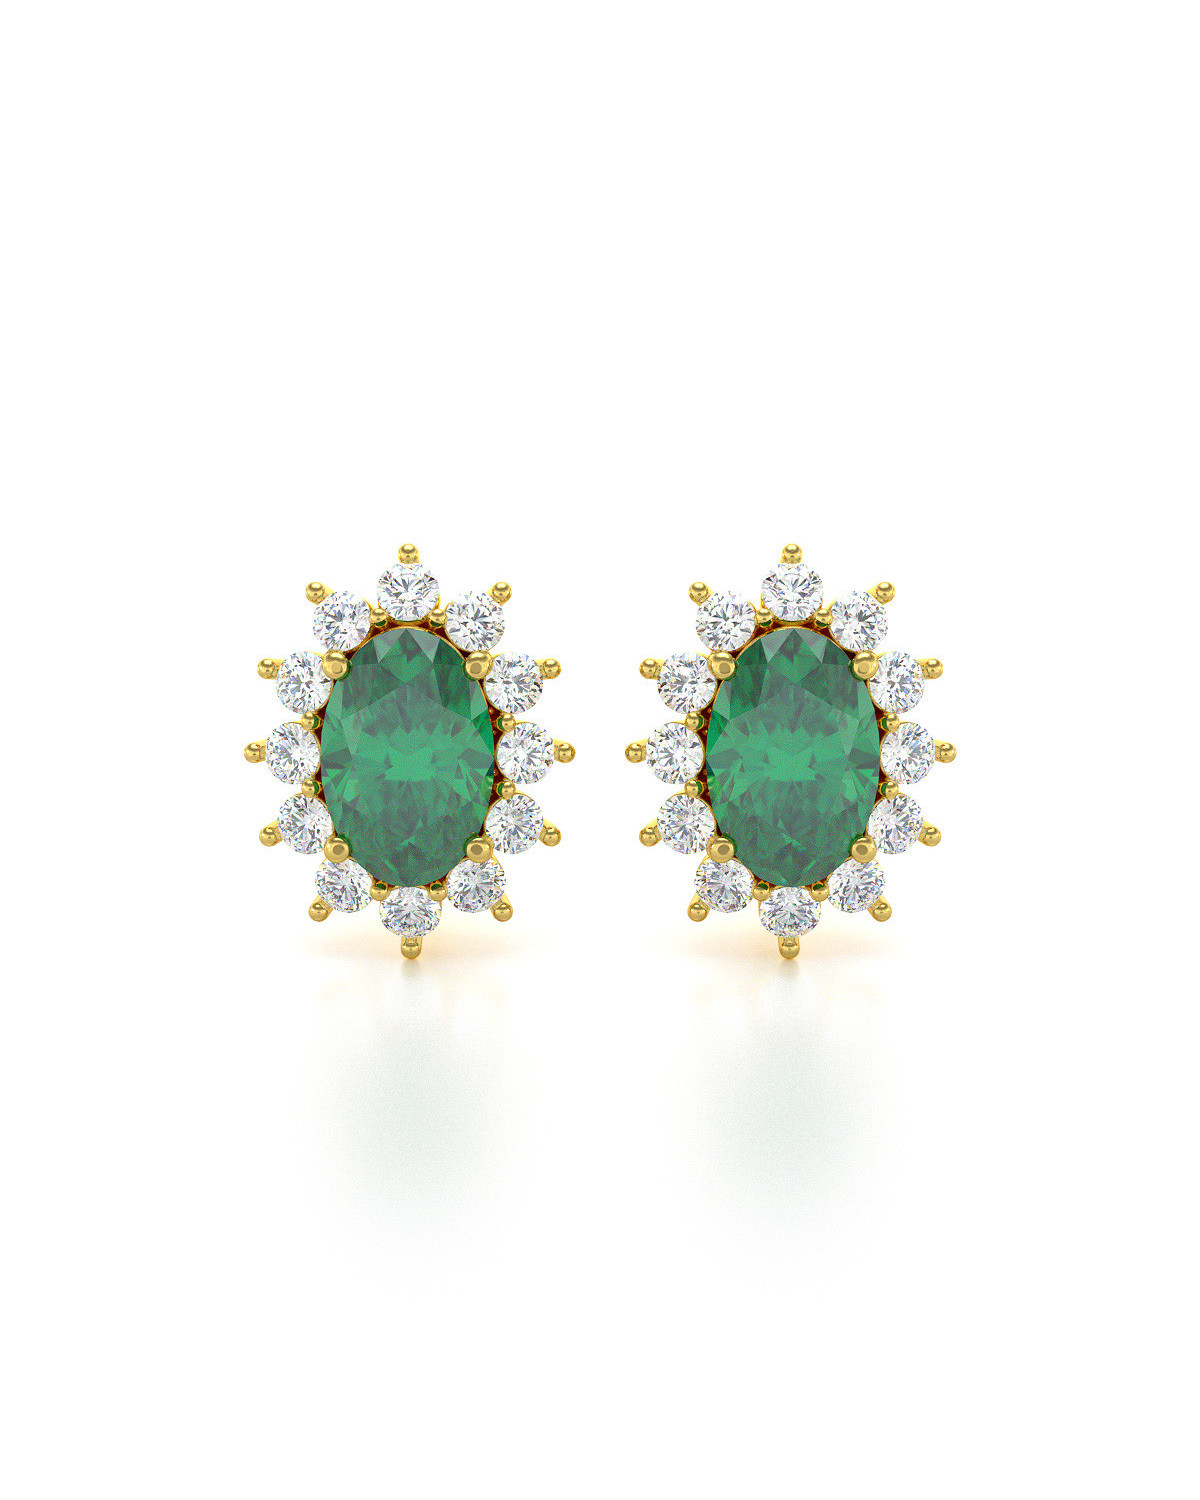 14K Gold Emerald Earrings ADEN - 1